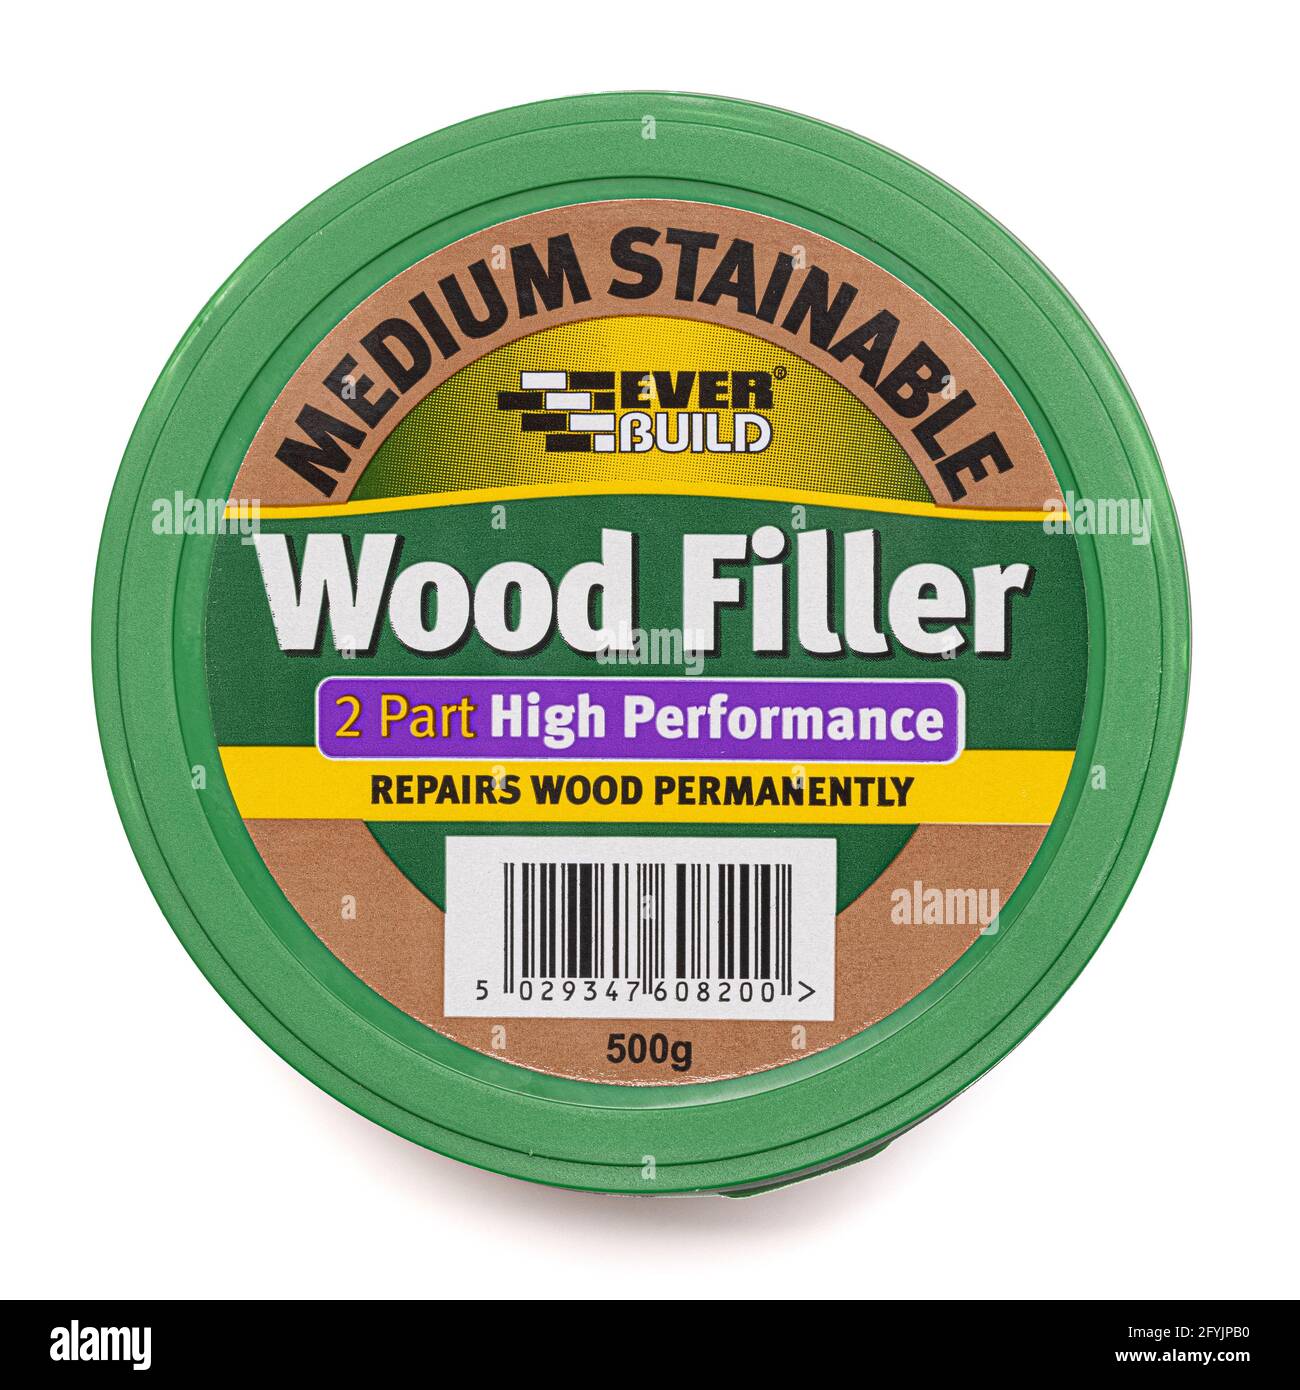 Ever Build Medium Stainable 2 parties High Performance Wood Filler - répare le bois de façon permanente Banque D'Images